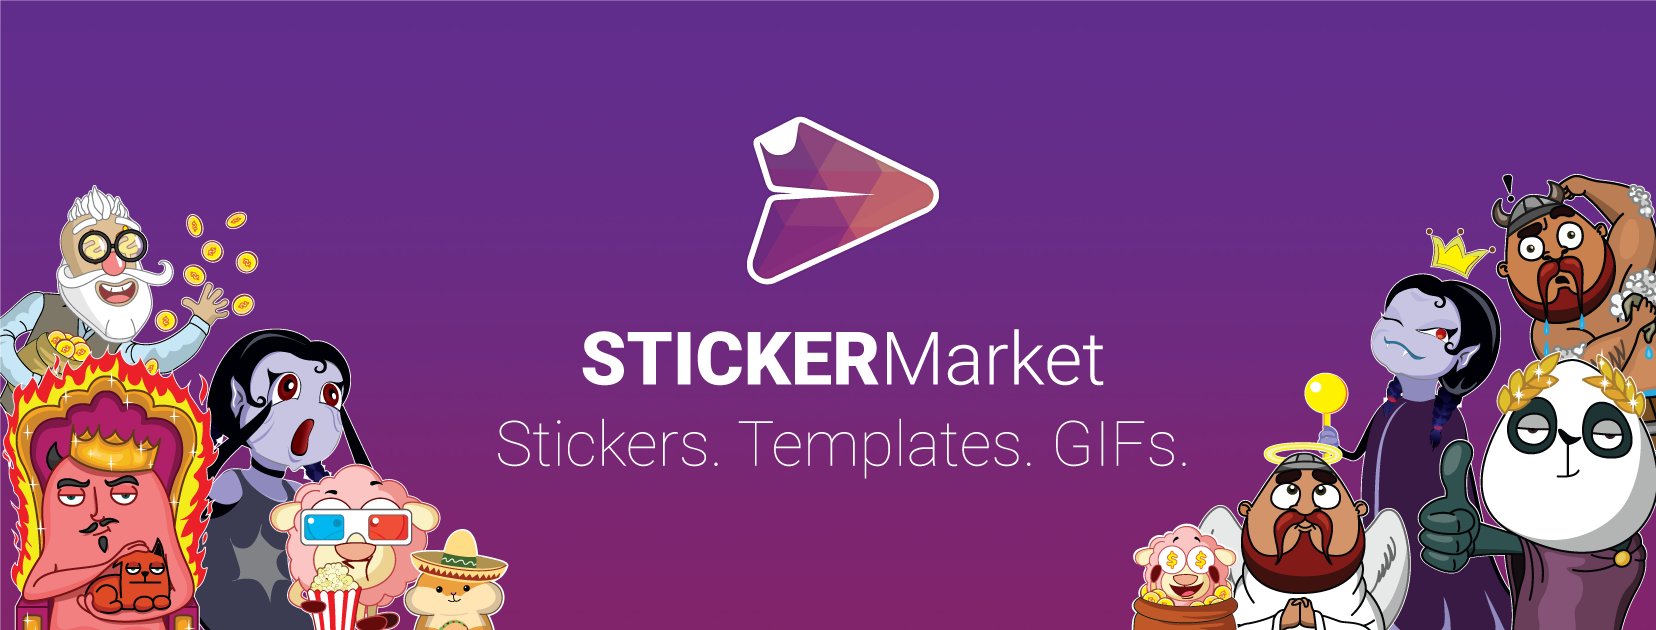 sticker market